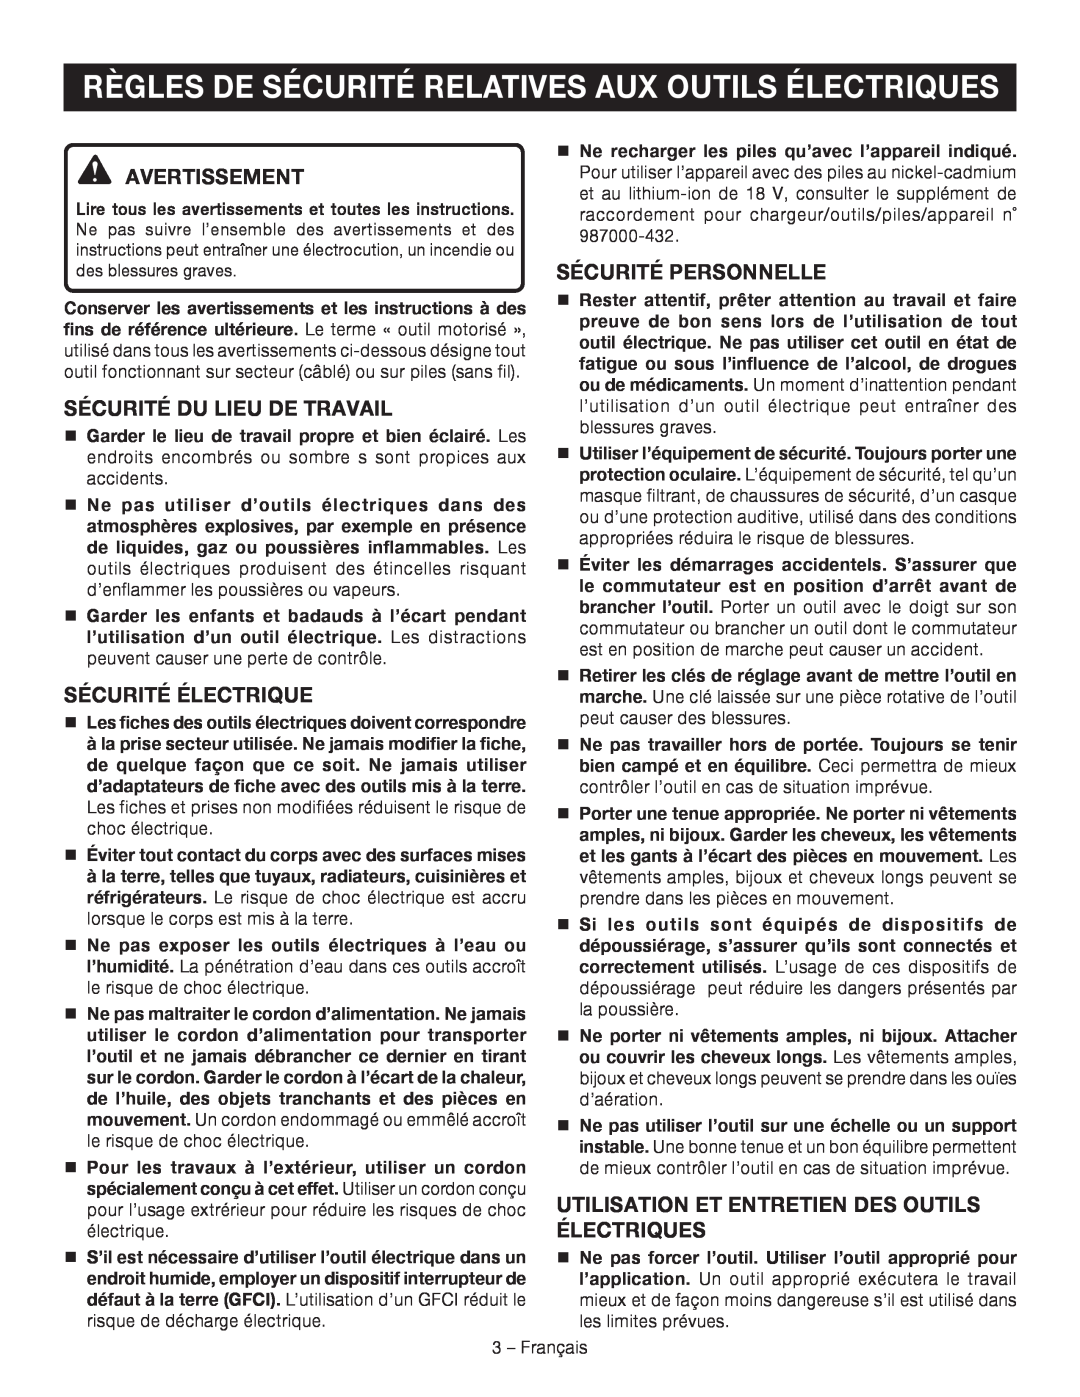 Ryobi P514 manuel dutilisation Avertissement, Sécurité Du Lieu De Travail, Sécurité Électrique, Sécurité Personnelle 